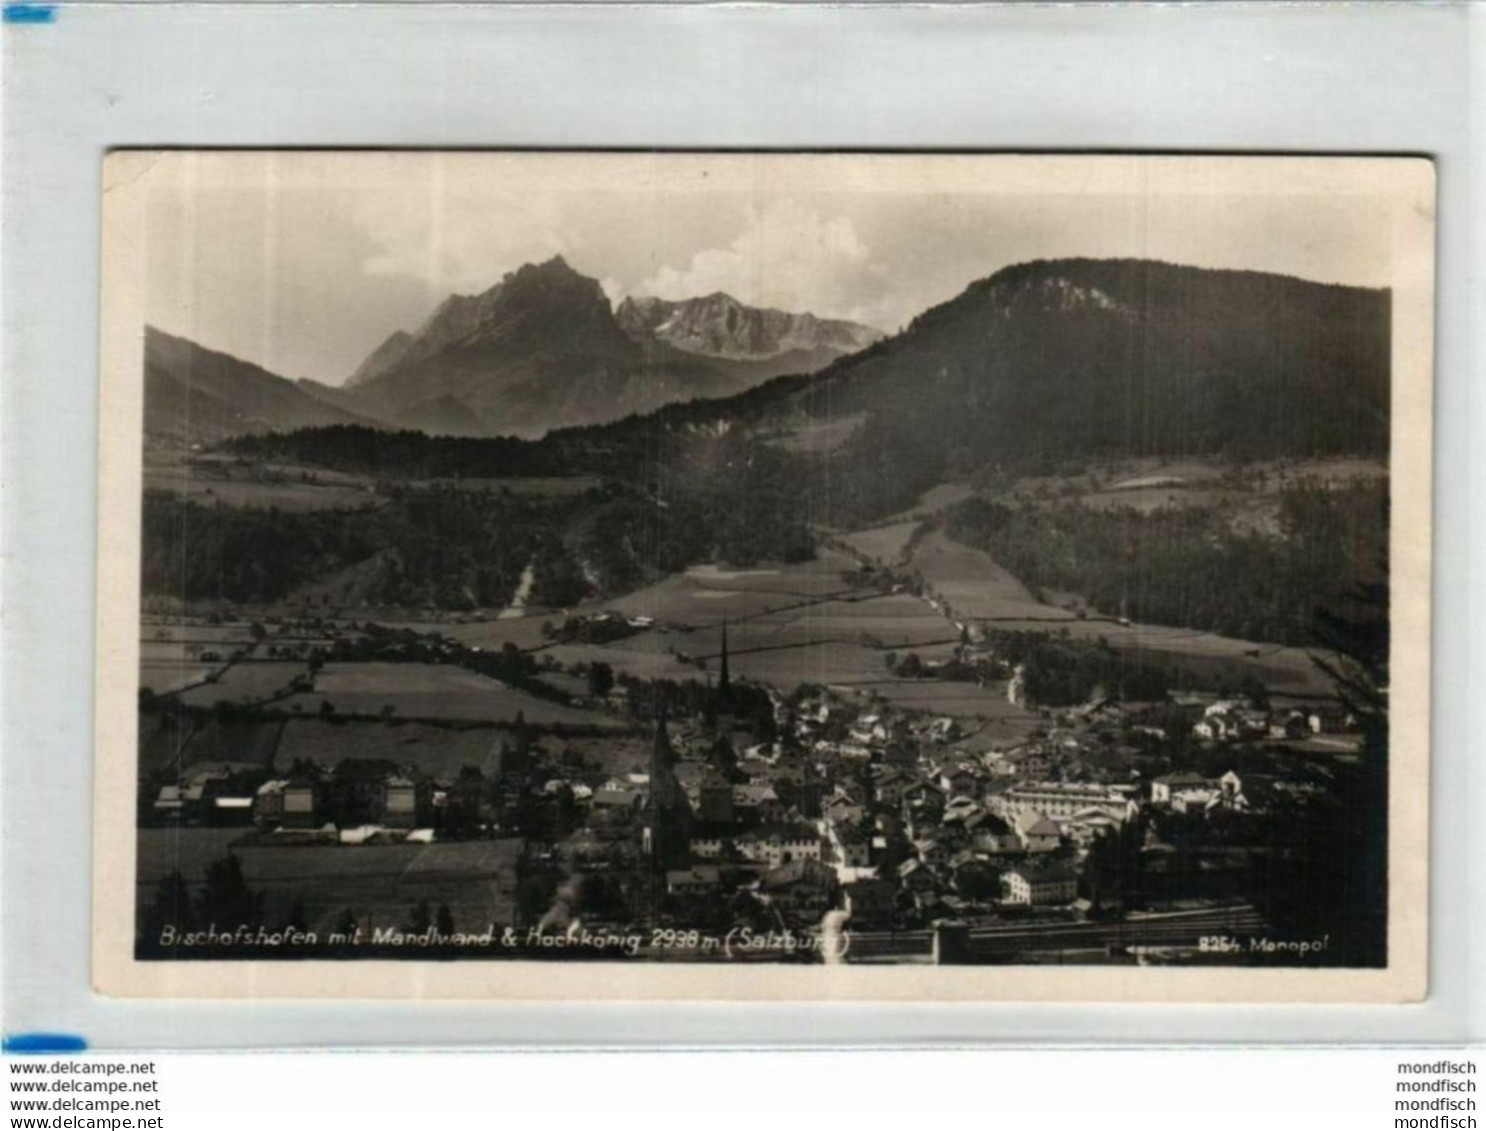 Bischofshofen 1927 - Bischofshofen